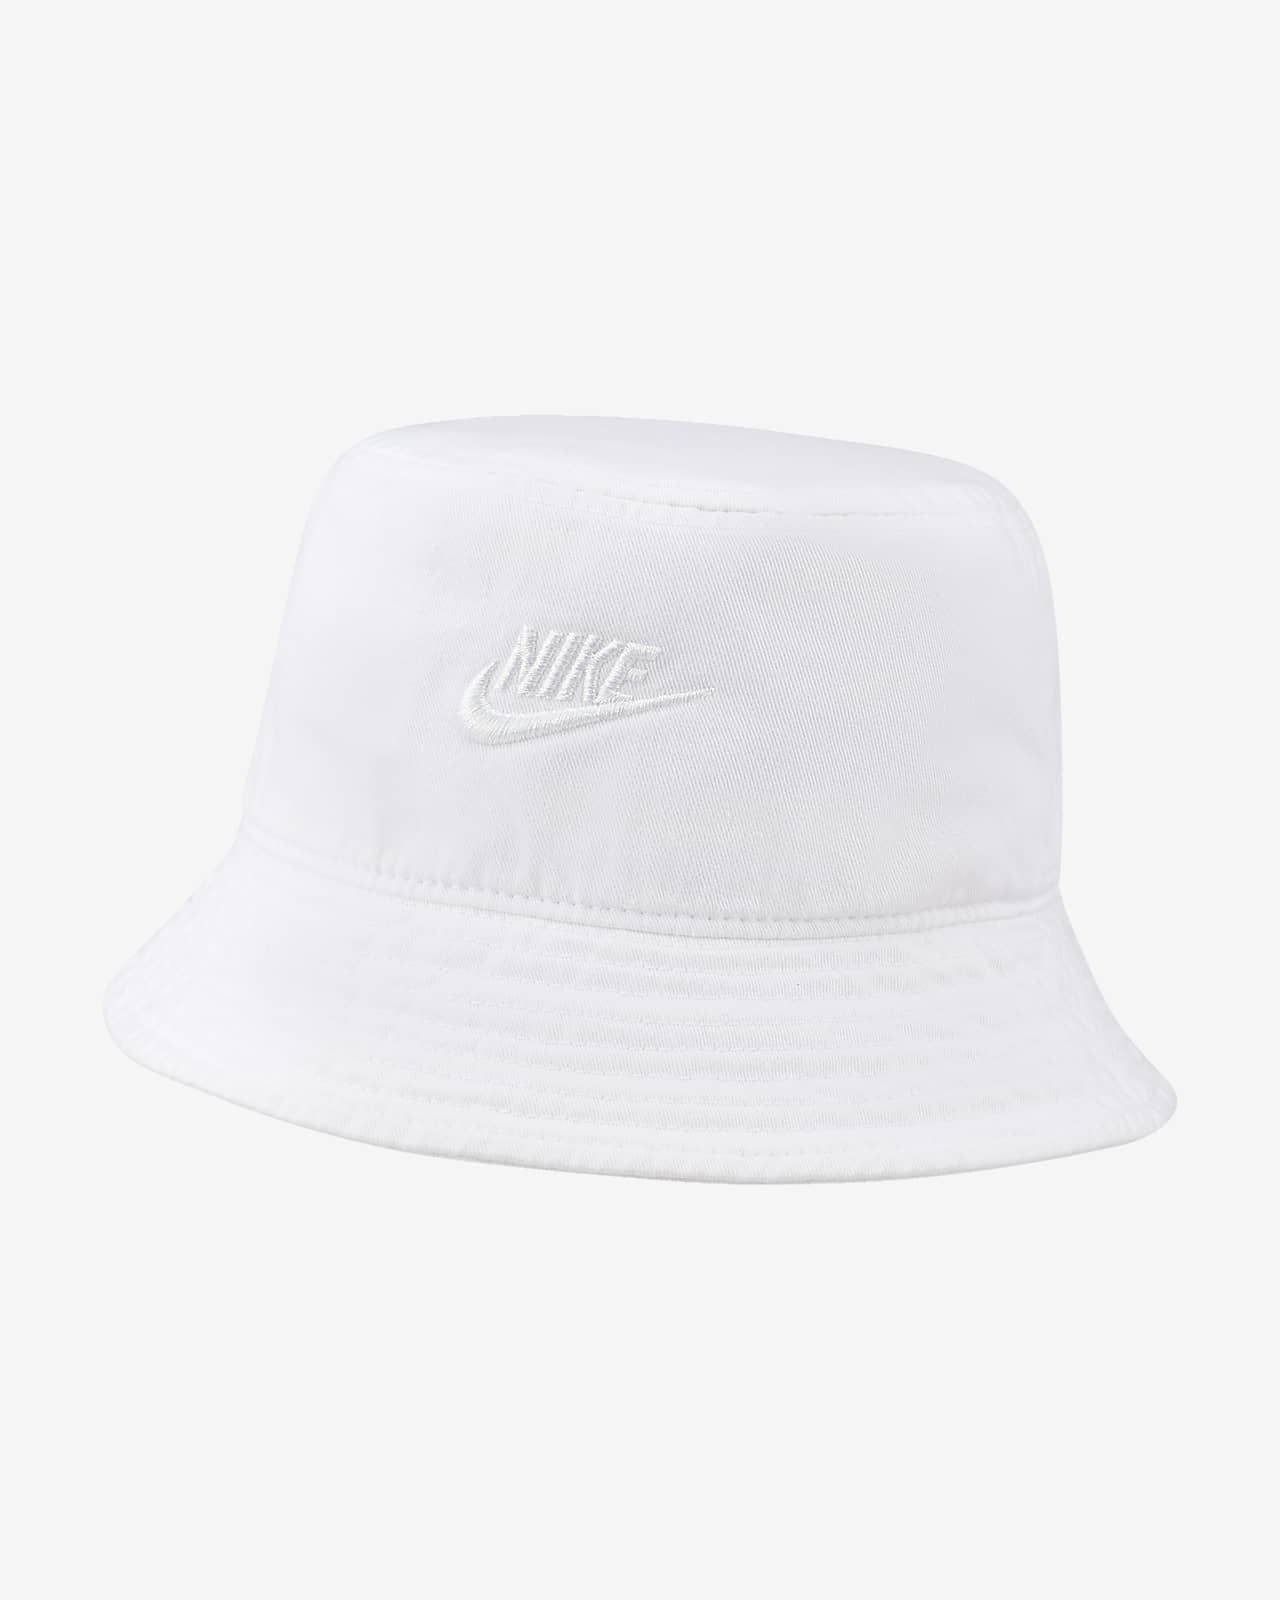 Nike Sportswear Bucket Hat. Nike.com | Nike (US)